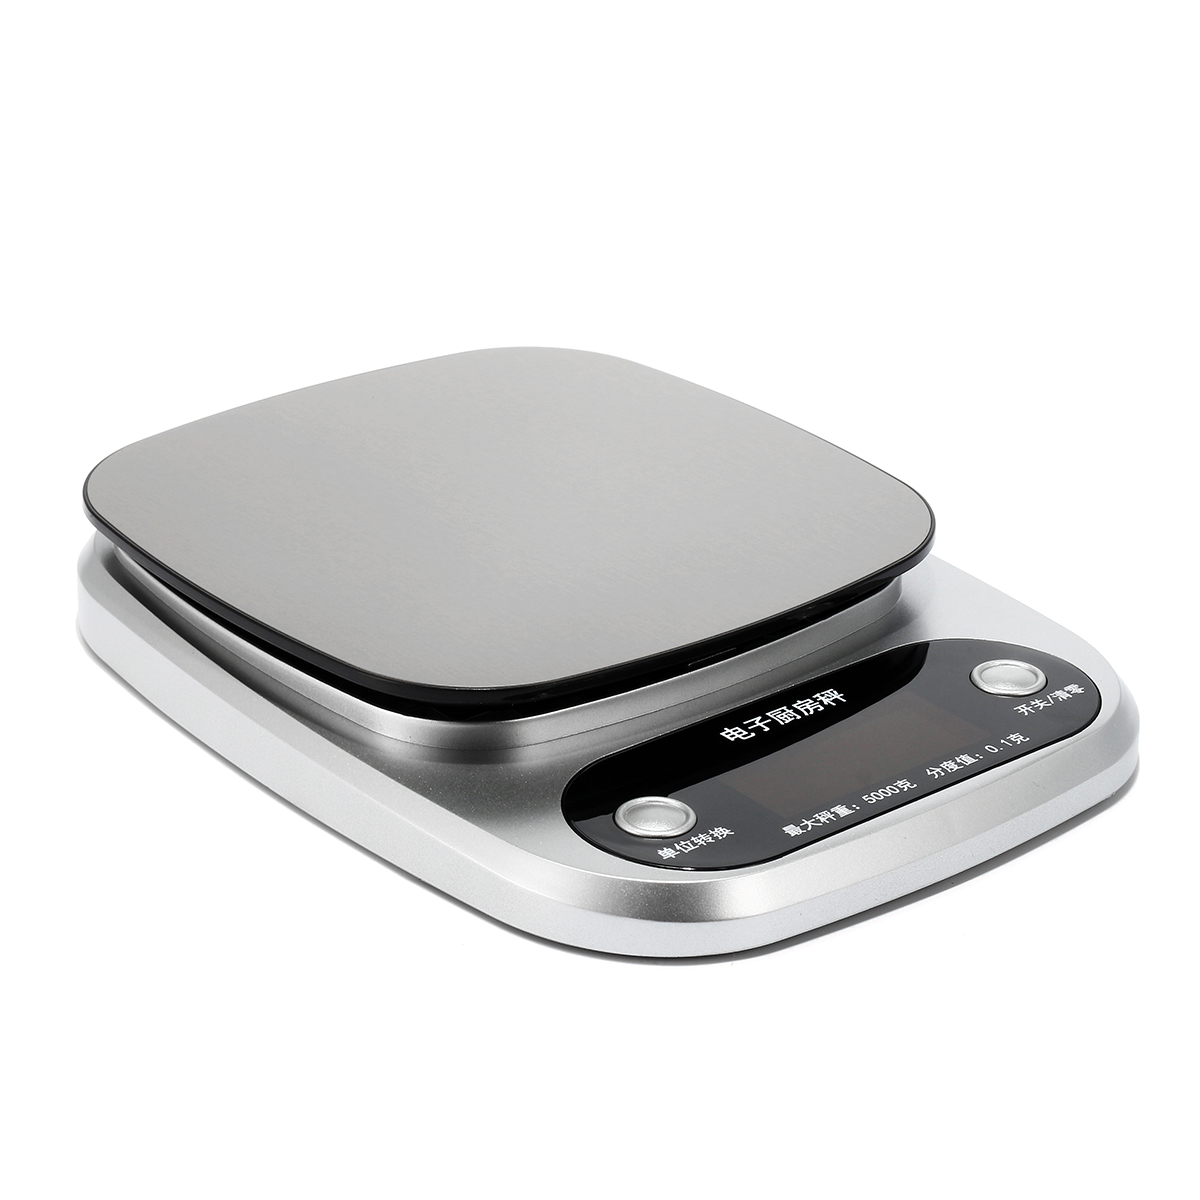 

Электронный 5000g / 0,1g Цифровой Шкала Продукты питания Весы LCD Дисплей Вес Весы NEW